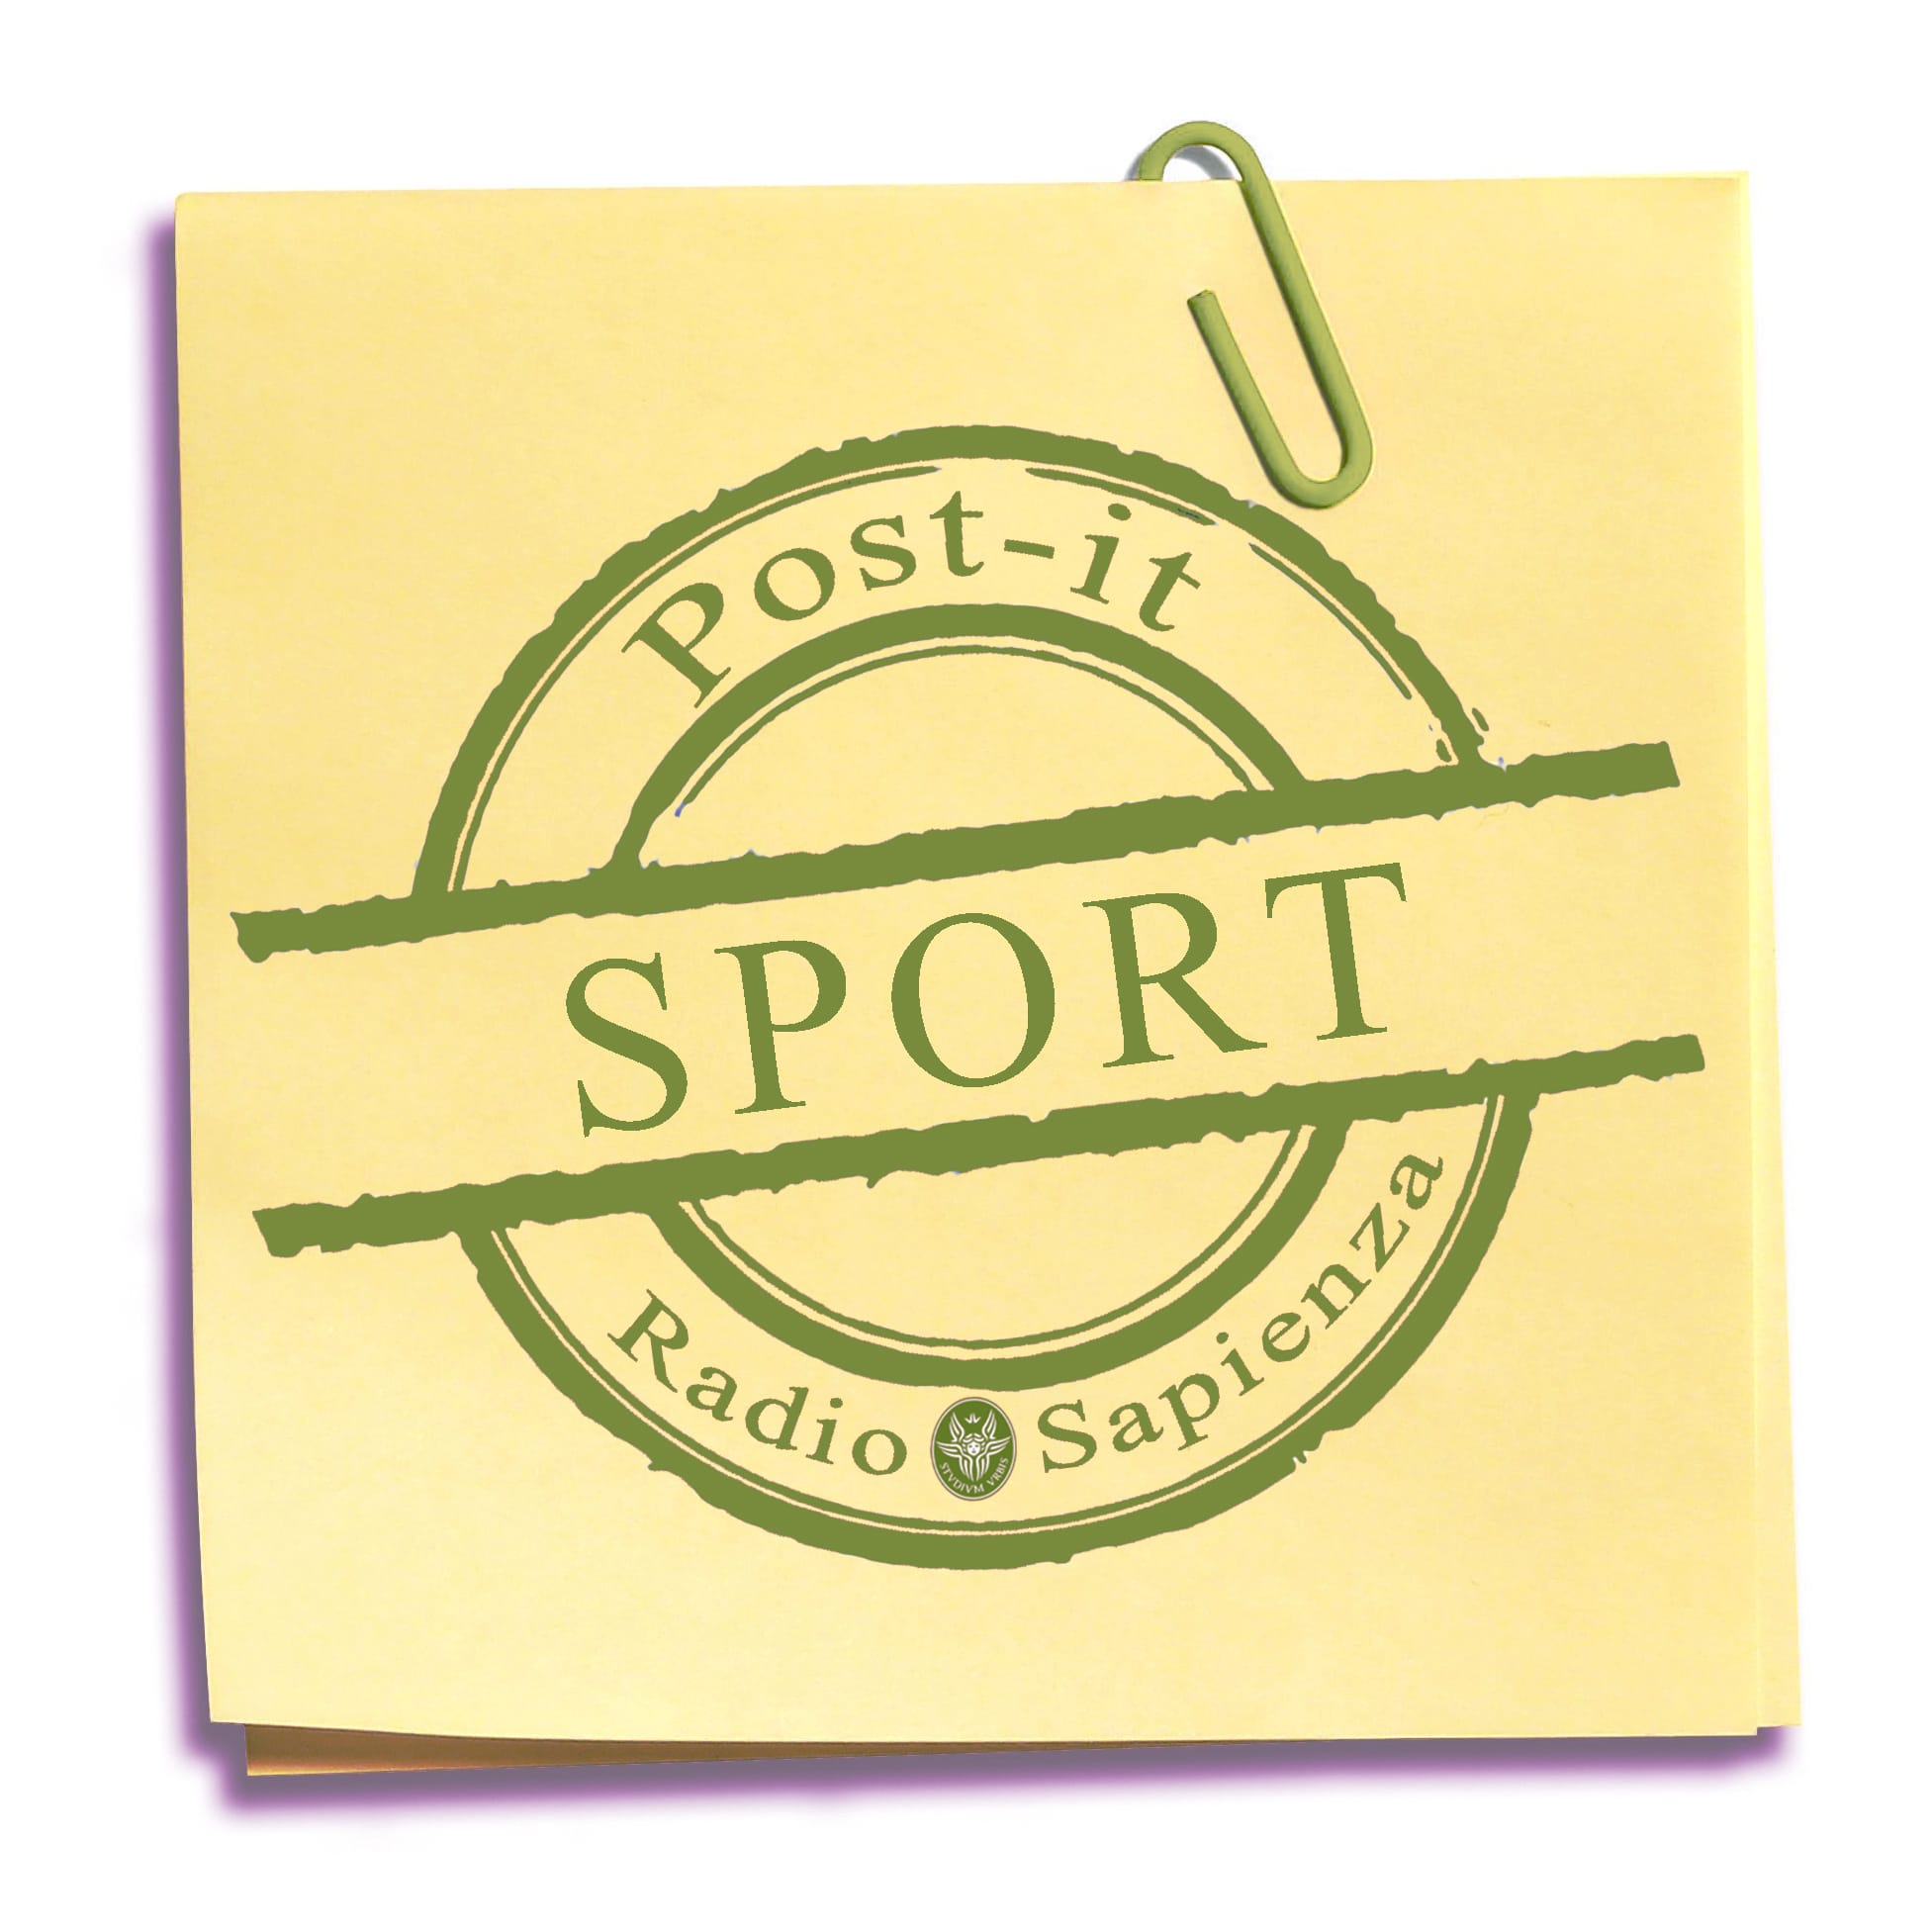 Post-it Sport – Mercoledì 28 aprile